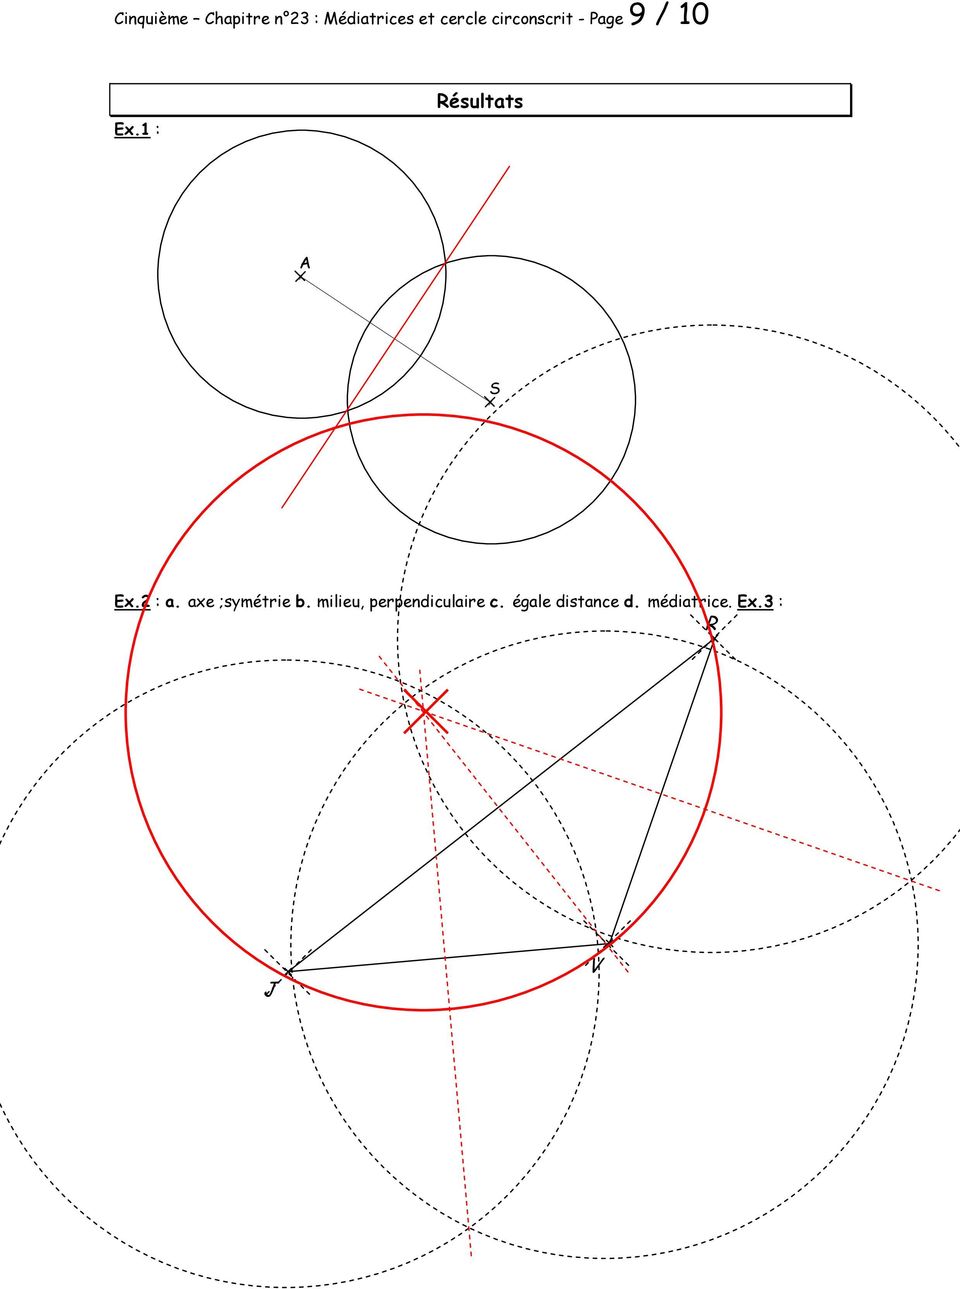 1 : Résultats A S Ex.2 : a. axe ;symétrie b.